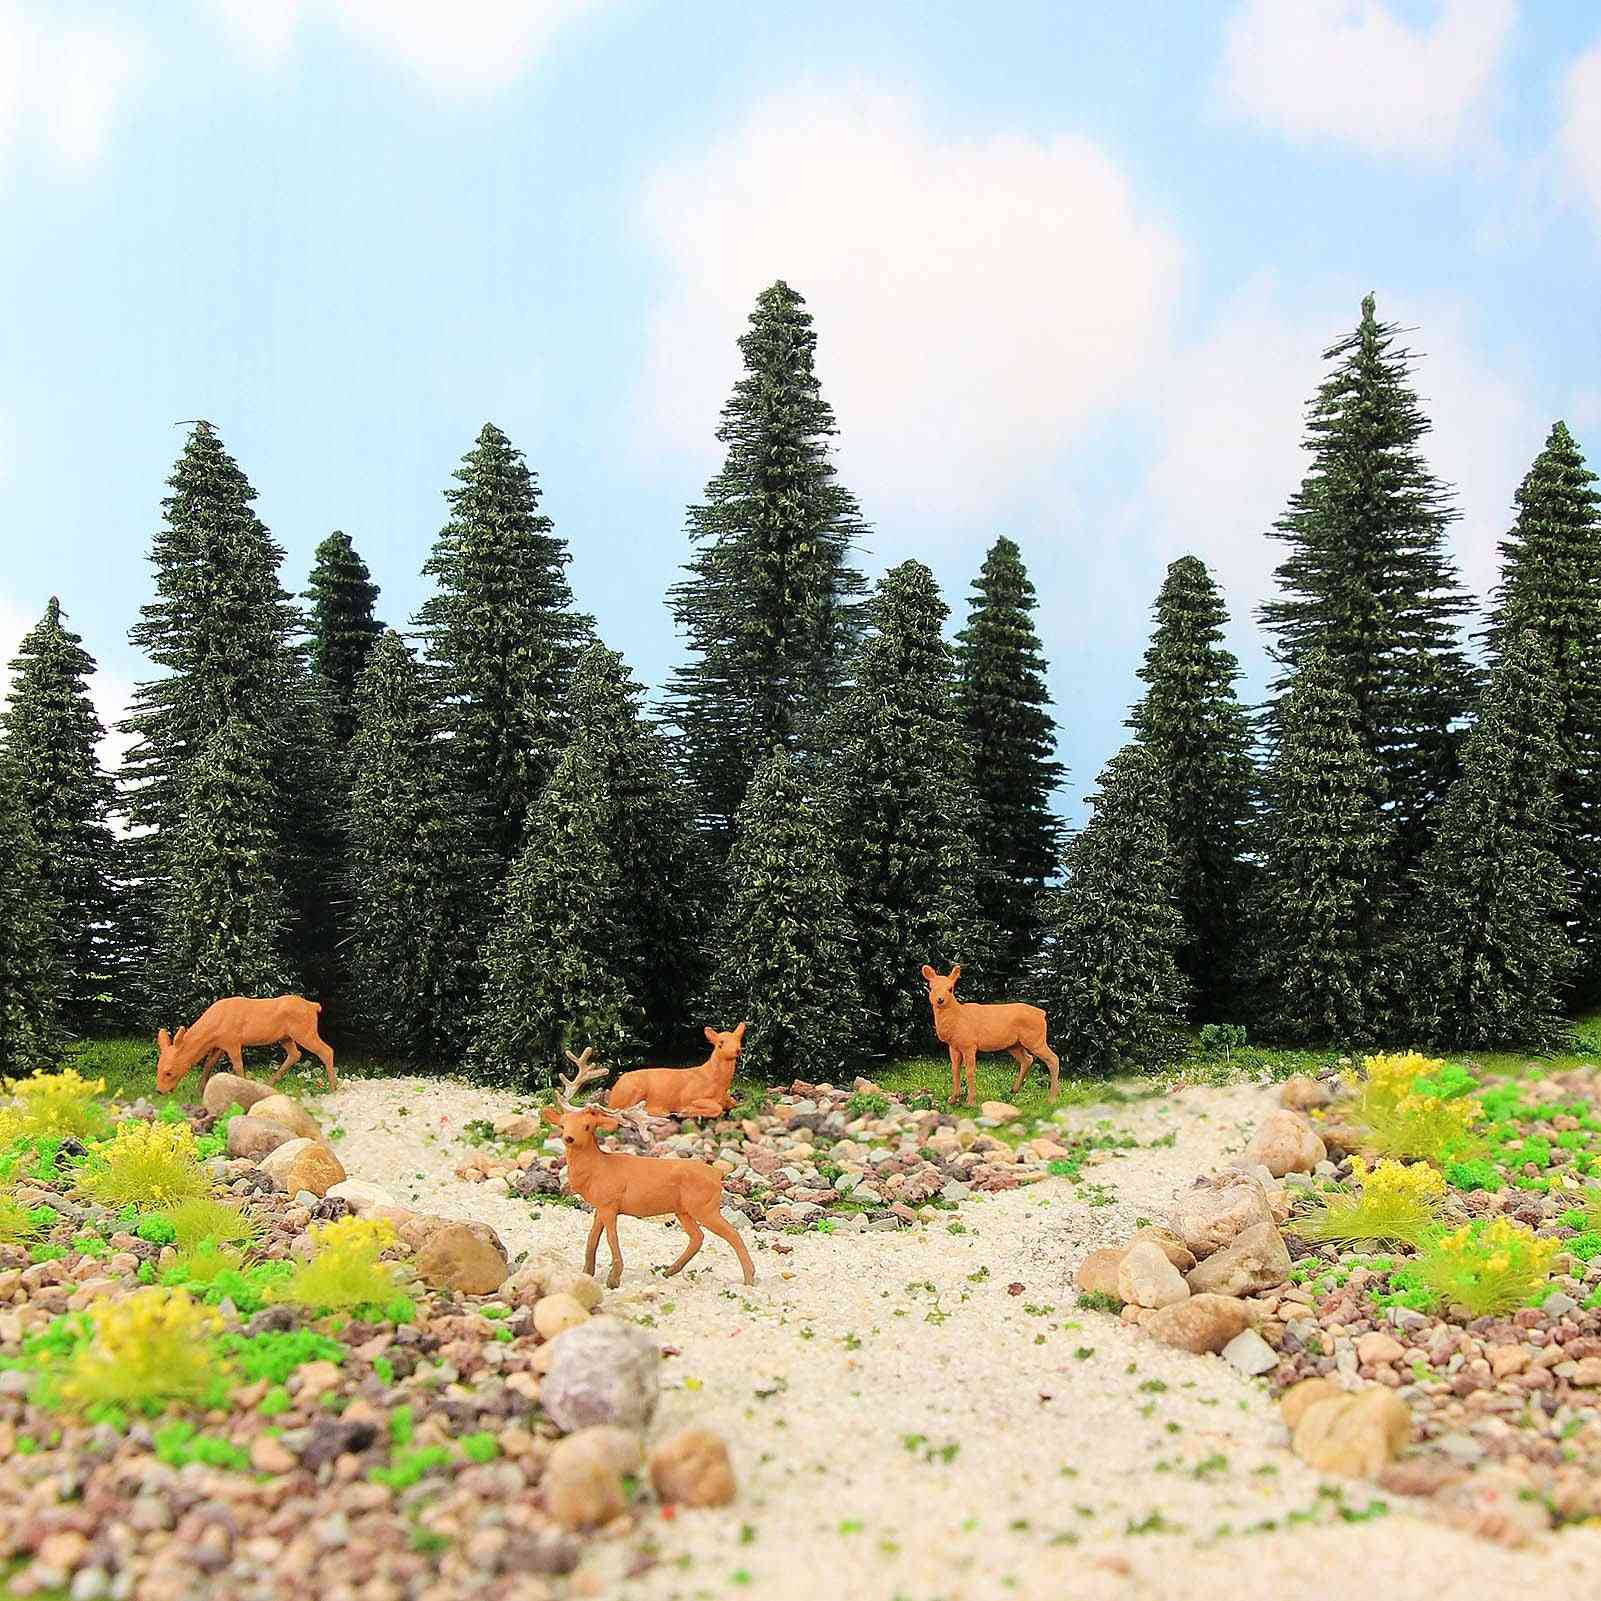 Pine Trees Green Pines Scale 1:87 Model Moose Deer, Railway Layout Mini Scenery